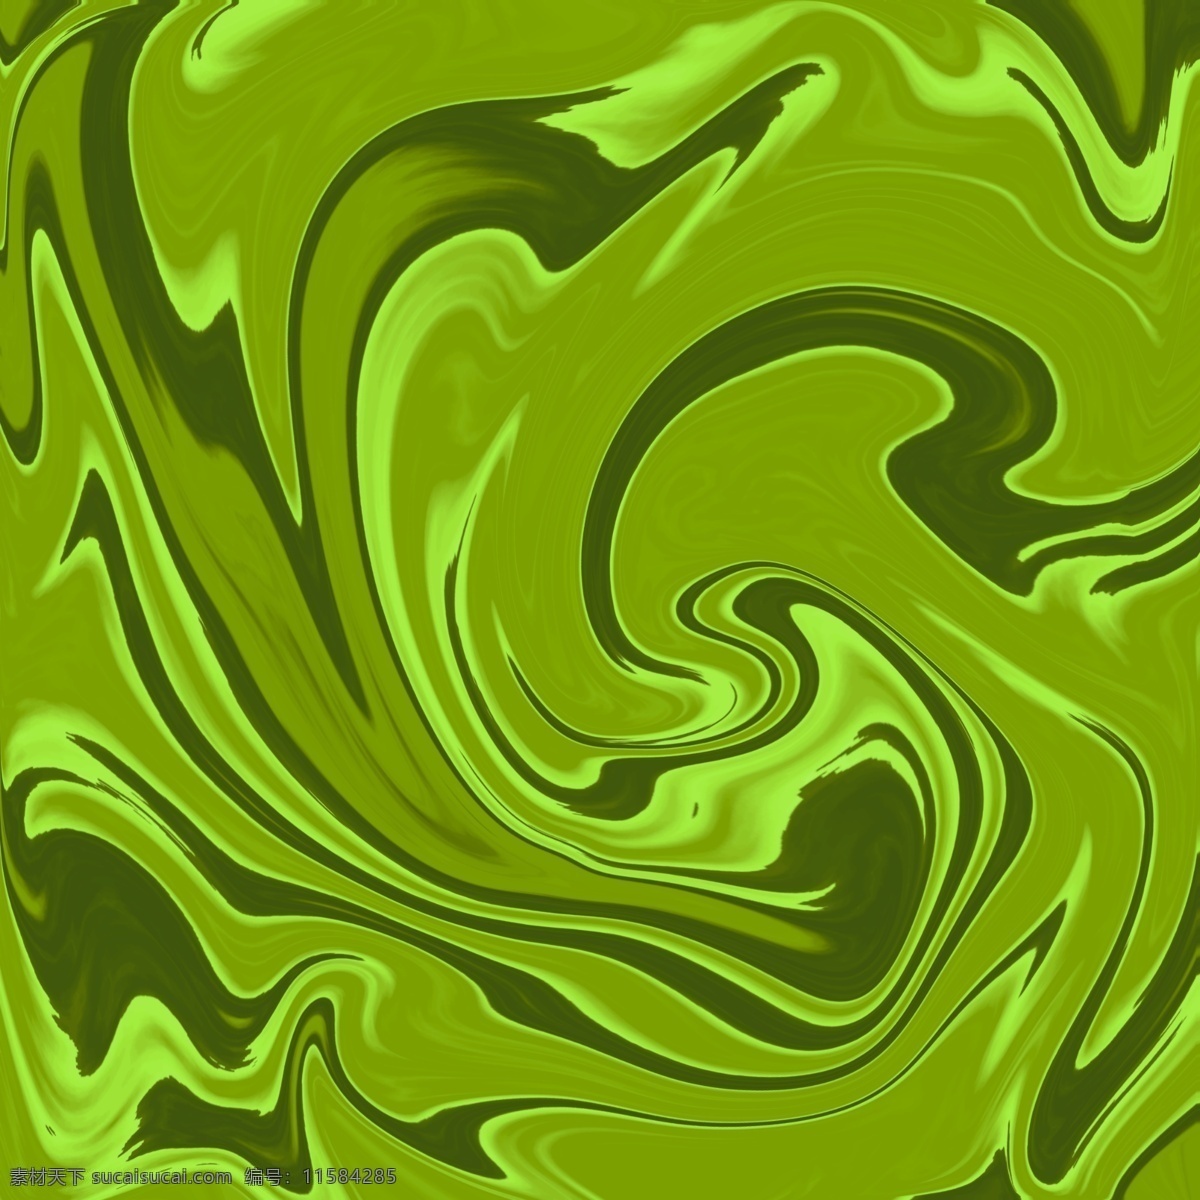 巴洛克纹理 巴洛克 纹理 漩涡 抽象 流线 水流 抽象底纹 底纹边框